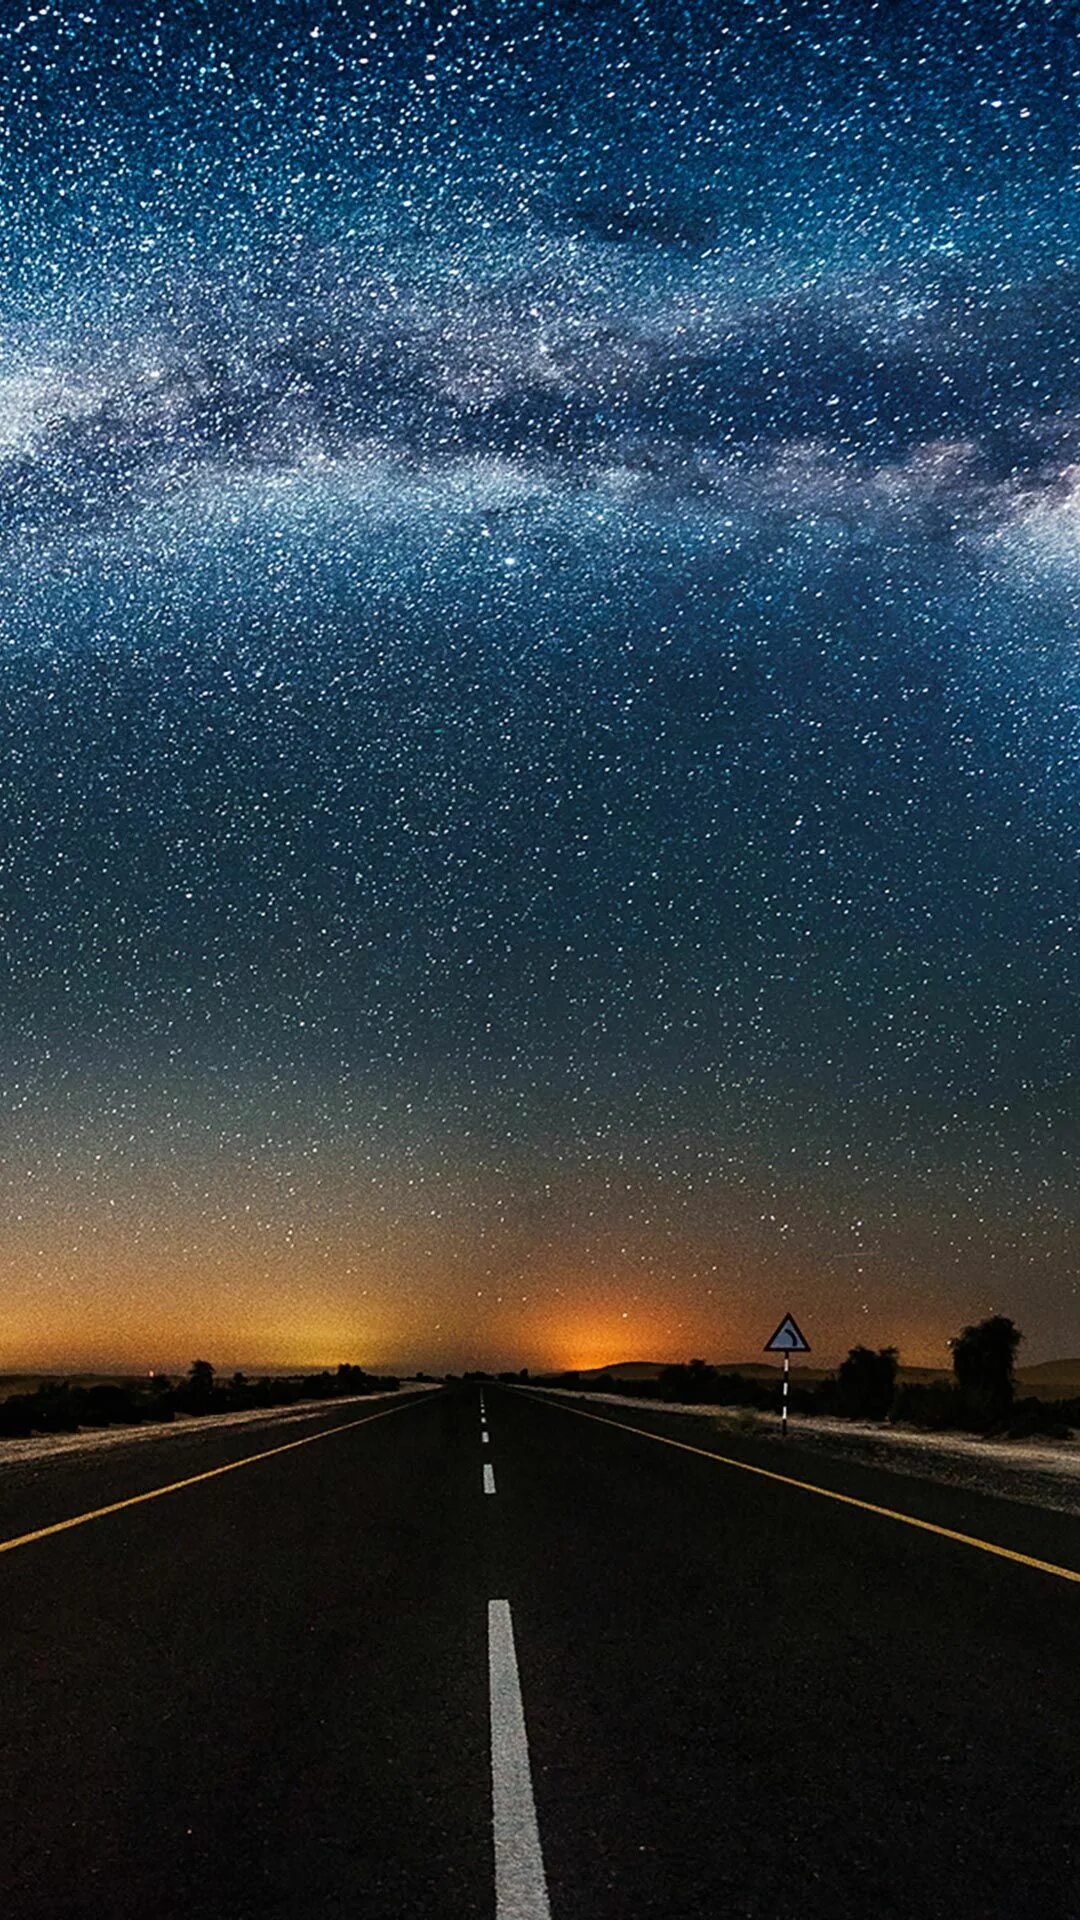 Фото обои экрана блокировки. Красивый экран блокировки. Дорога в космос. Звездное небо. Звездное небо дорога.